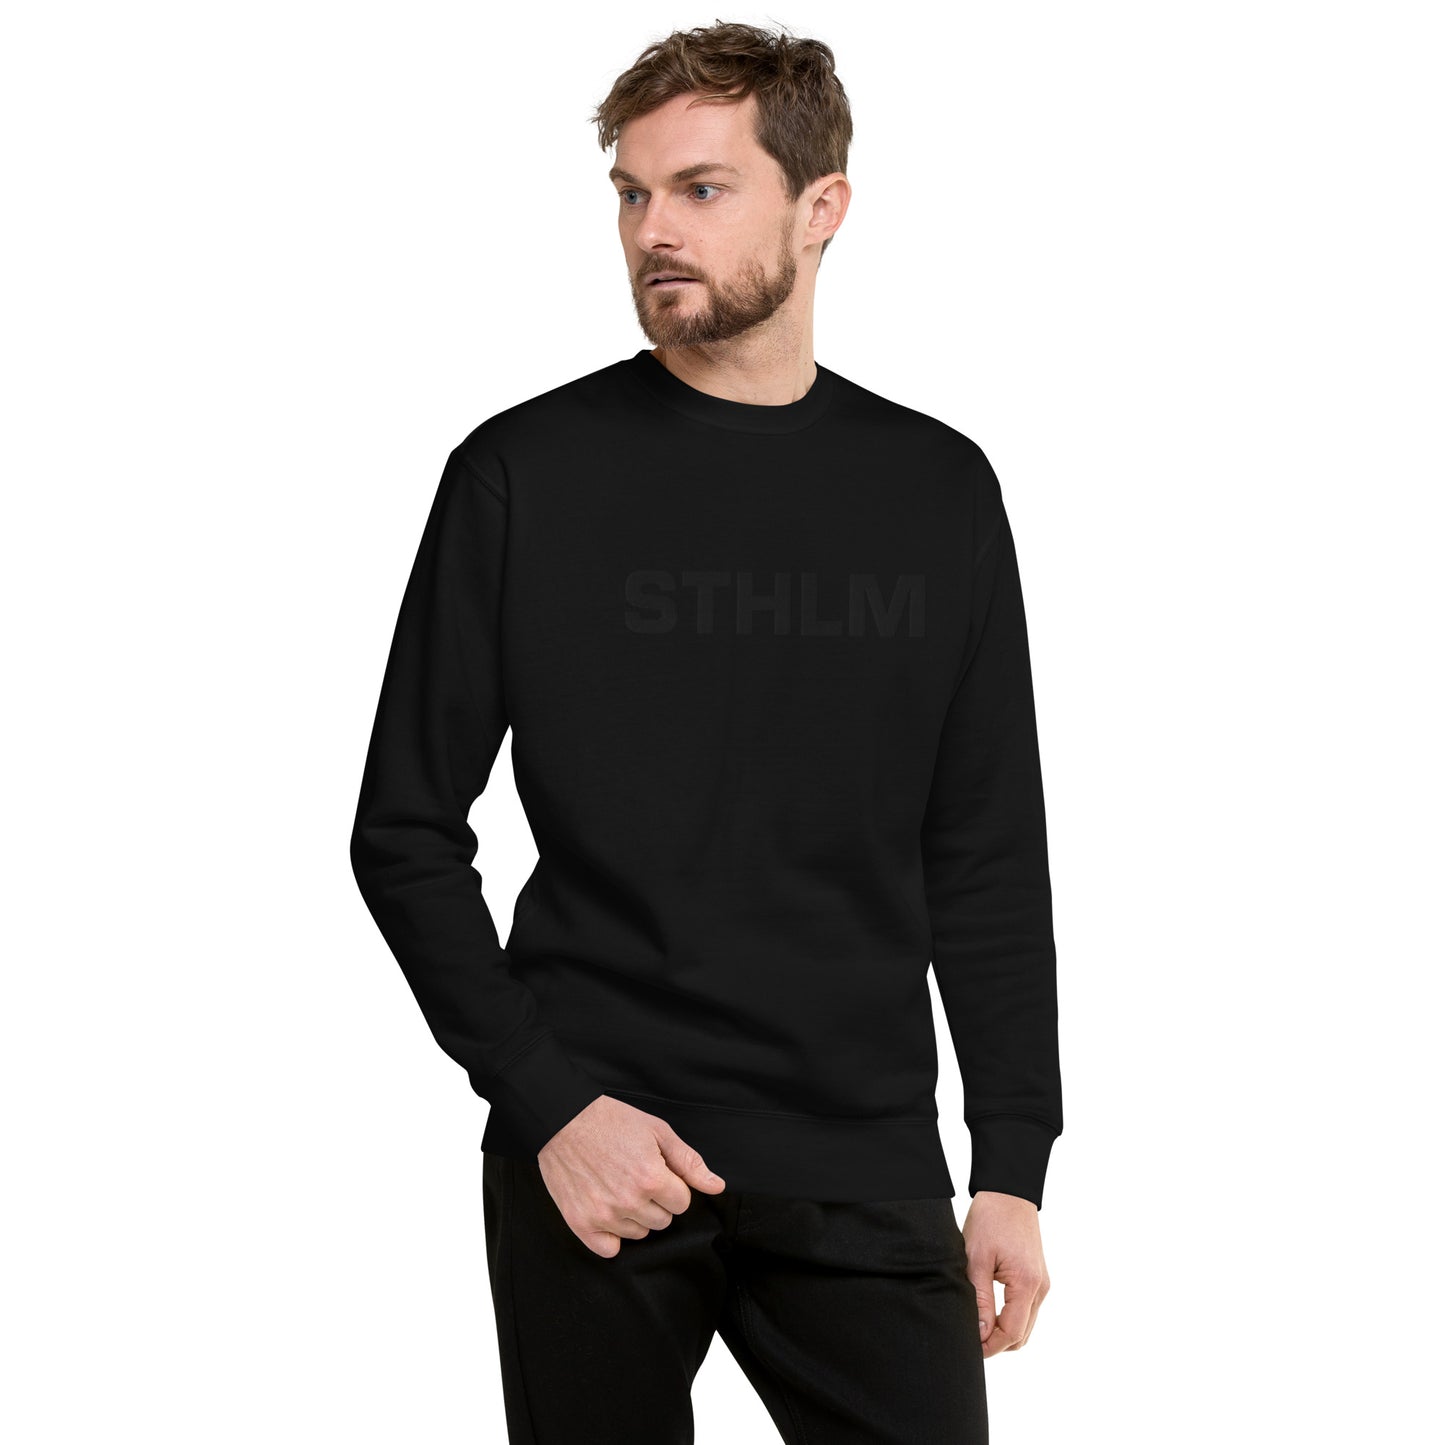 STHLM black on black edition - Premium Unisex Sweatshirt/Collegetröja med svart brodyr